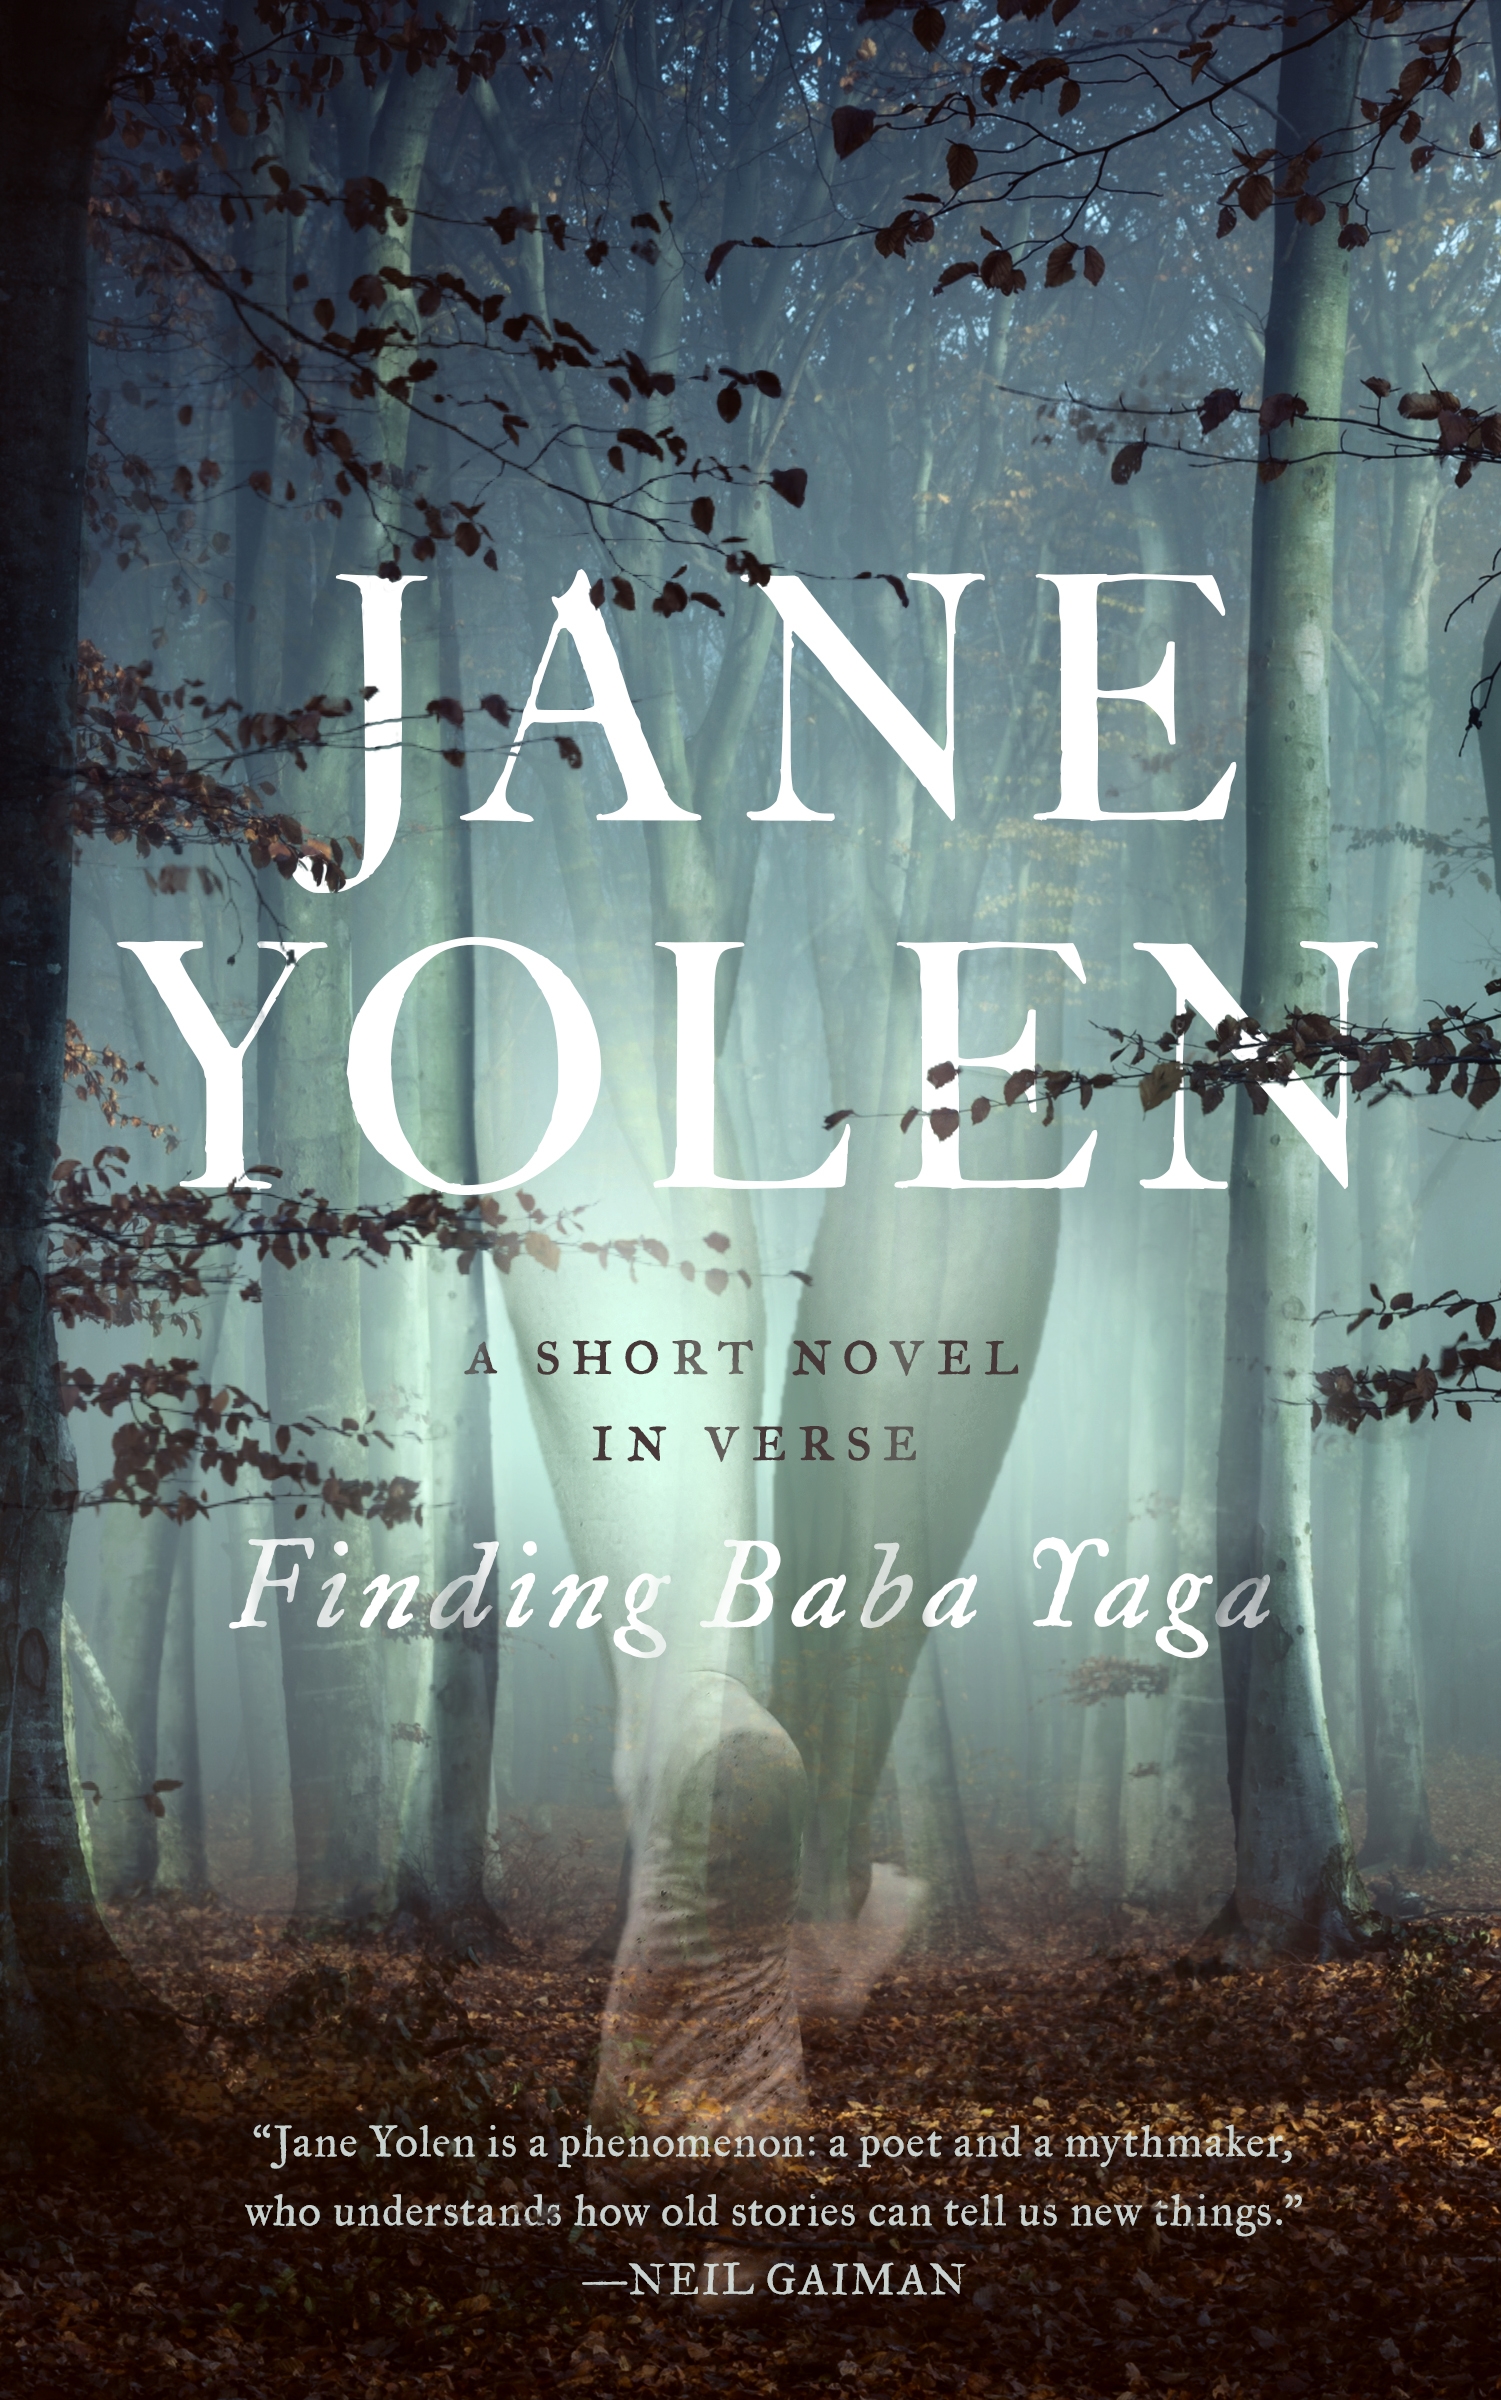 Finding Baba Yaga : A Short Novel in Verse by Jane Yolen